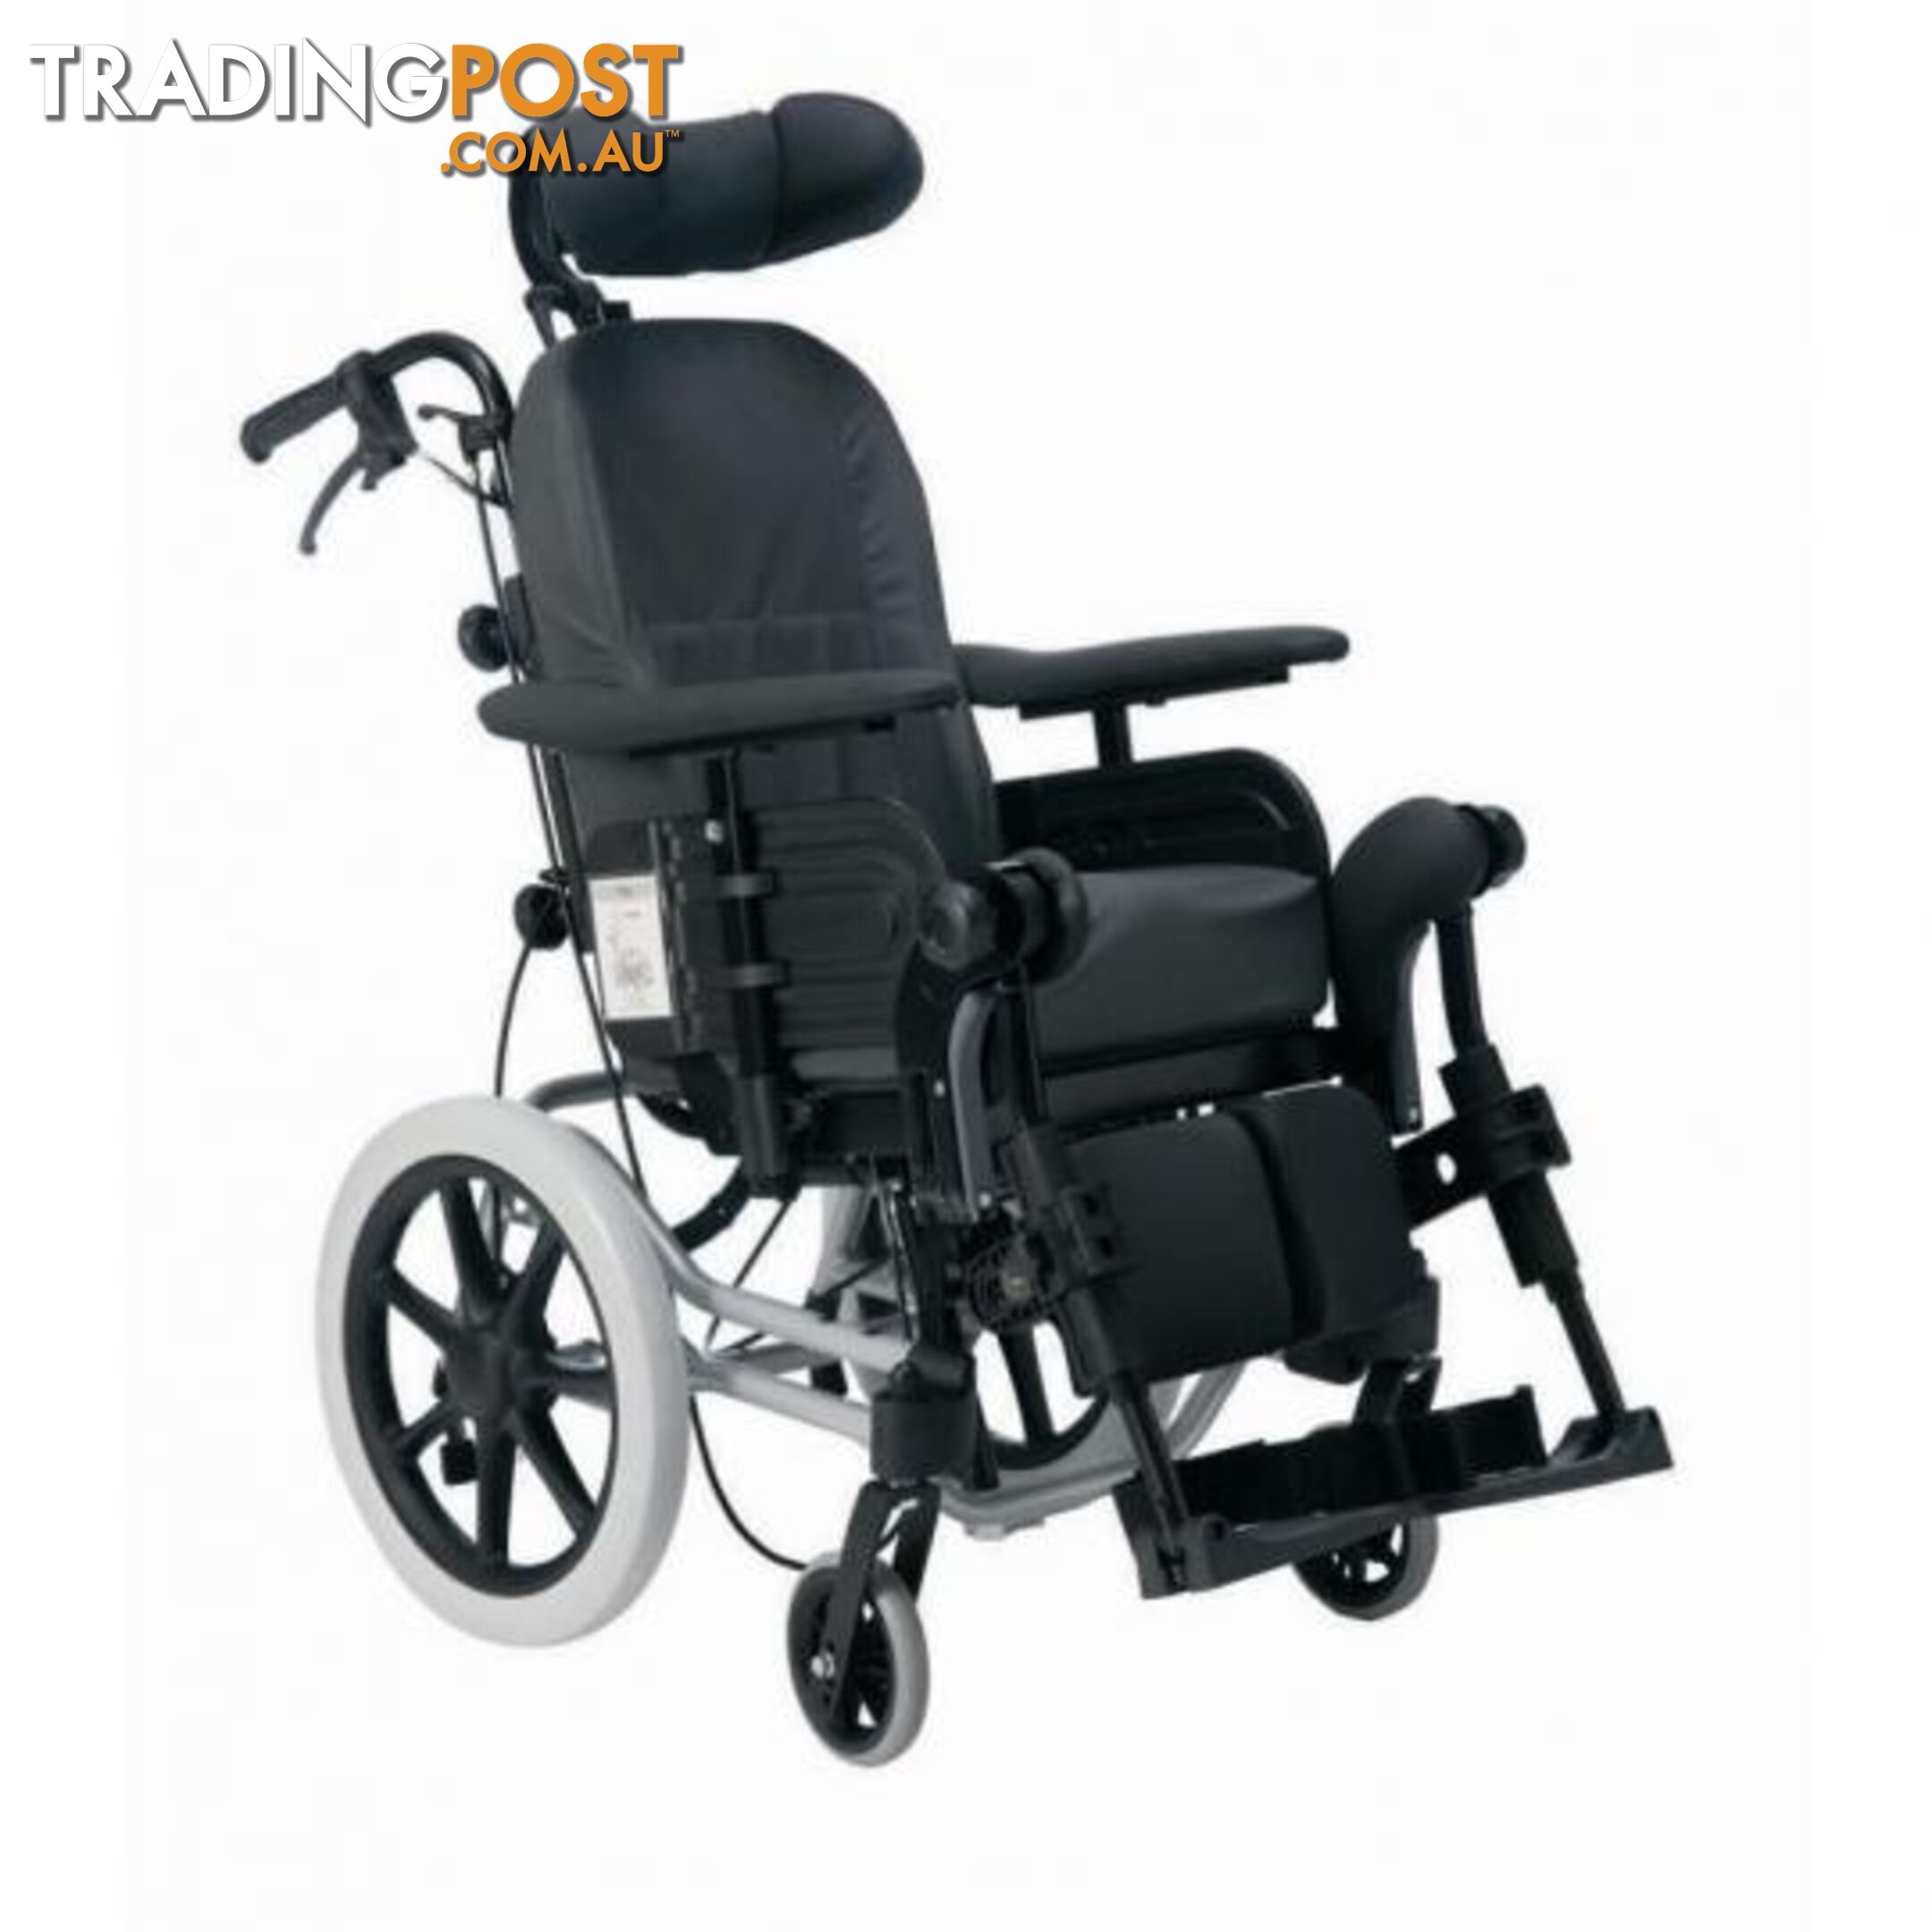 Rea Azalea Minor wheelchair